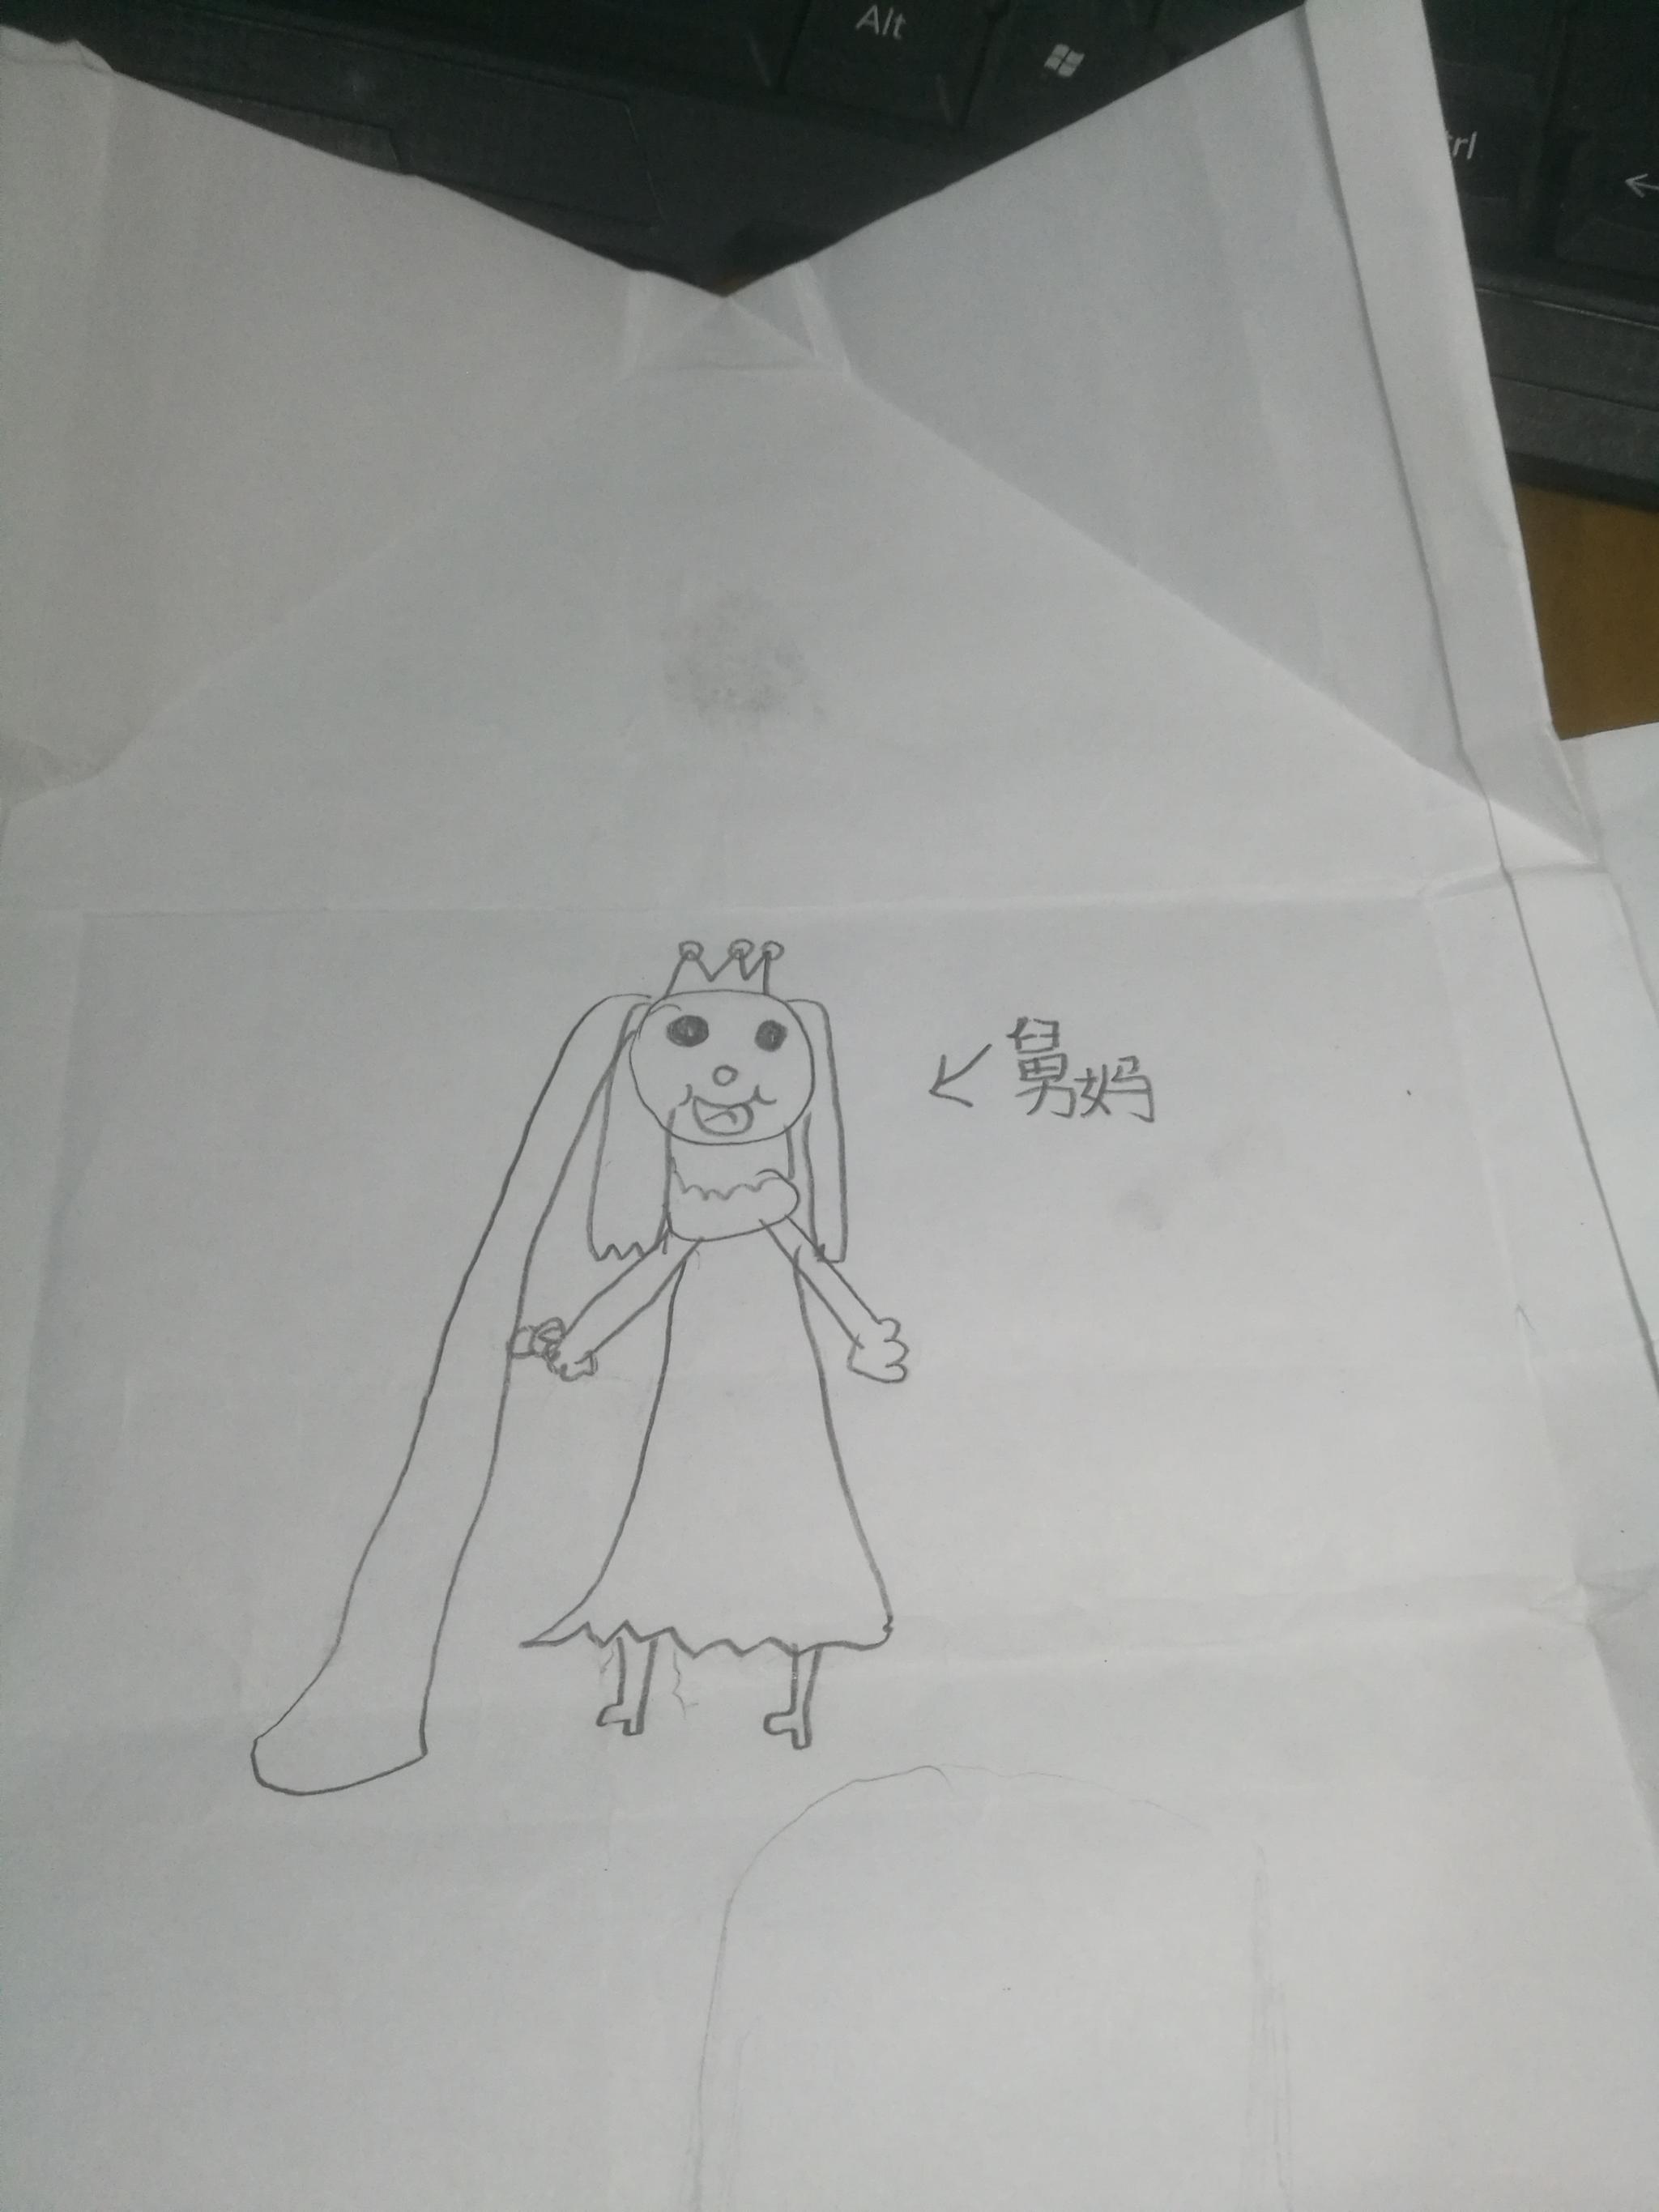 一个小学四年级的小女孩写给结婚舅舅的一封信